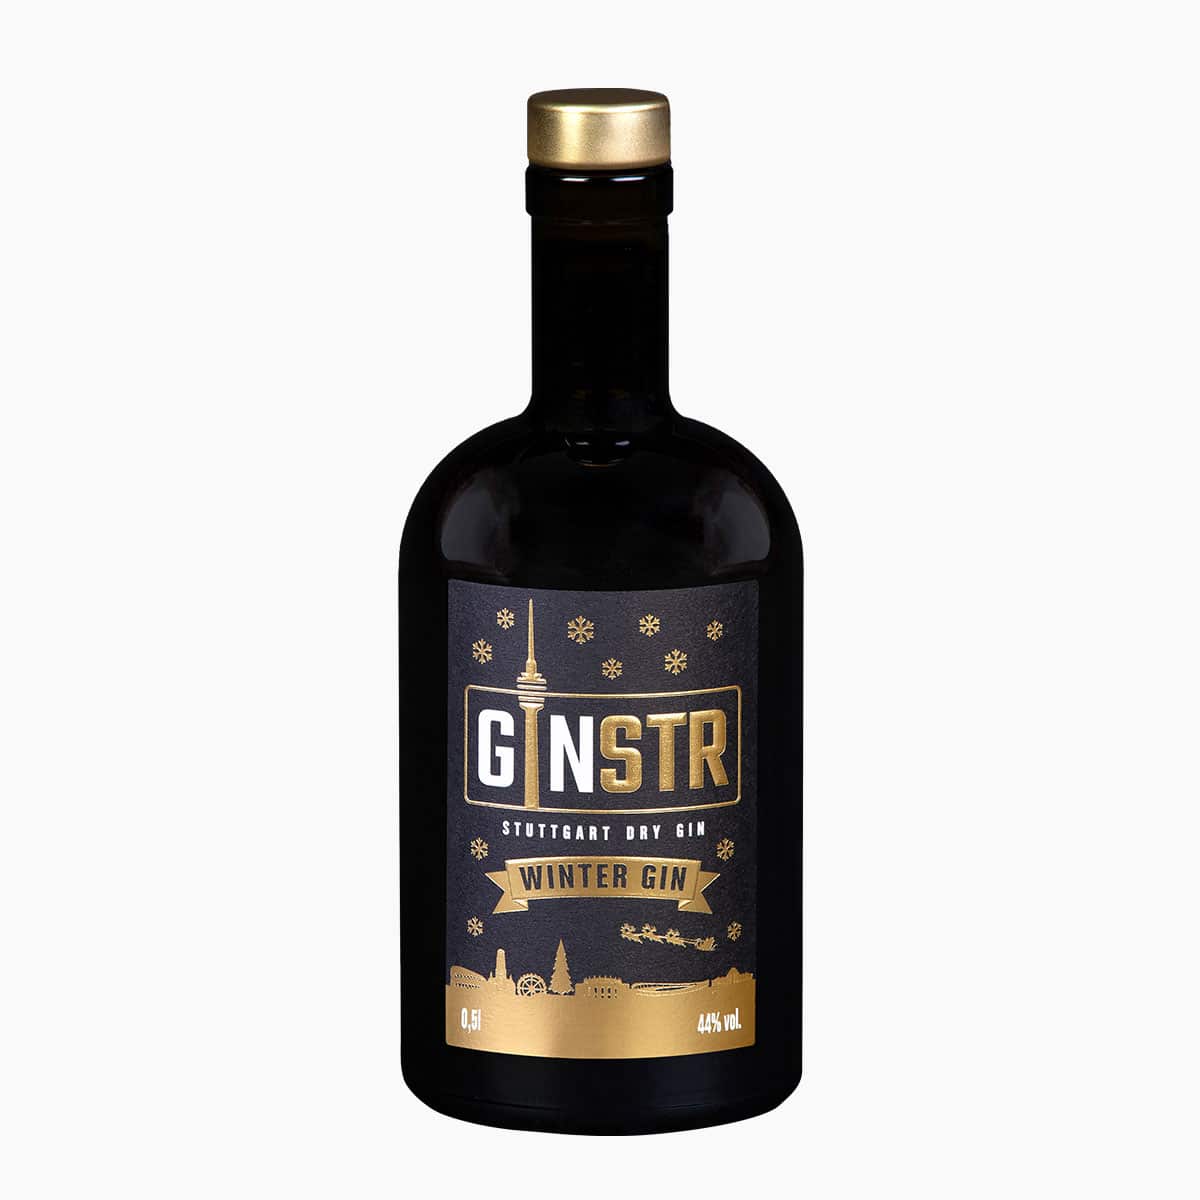 Brug GINSTR - Winter Gin til en forbedret oplevelse